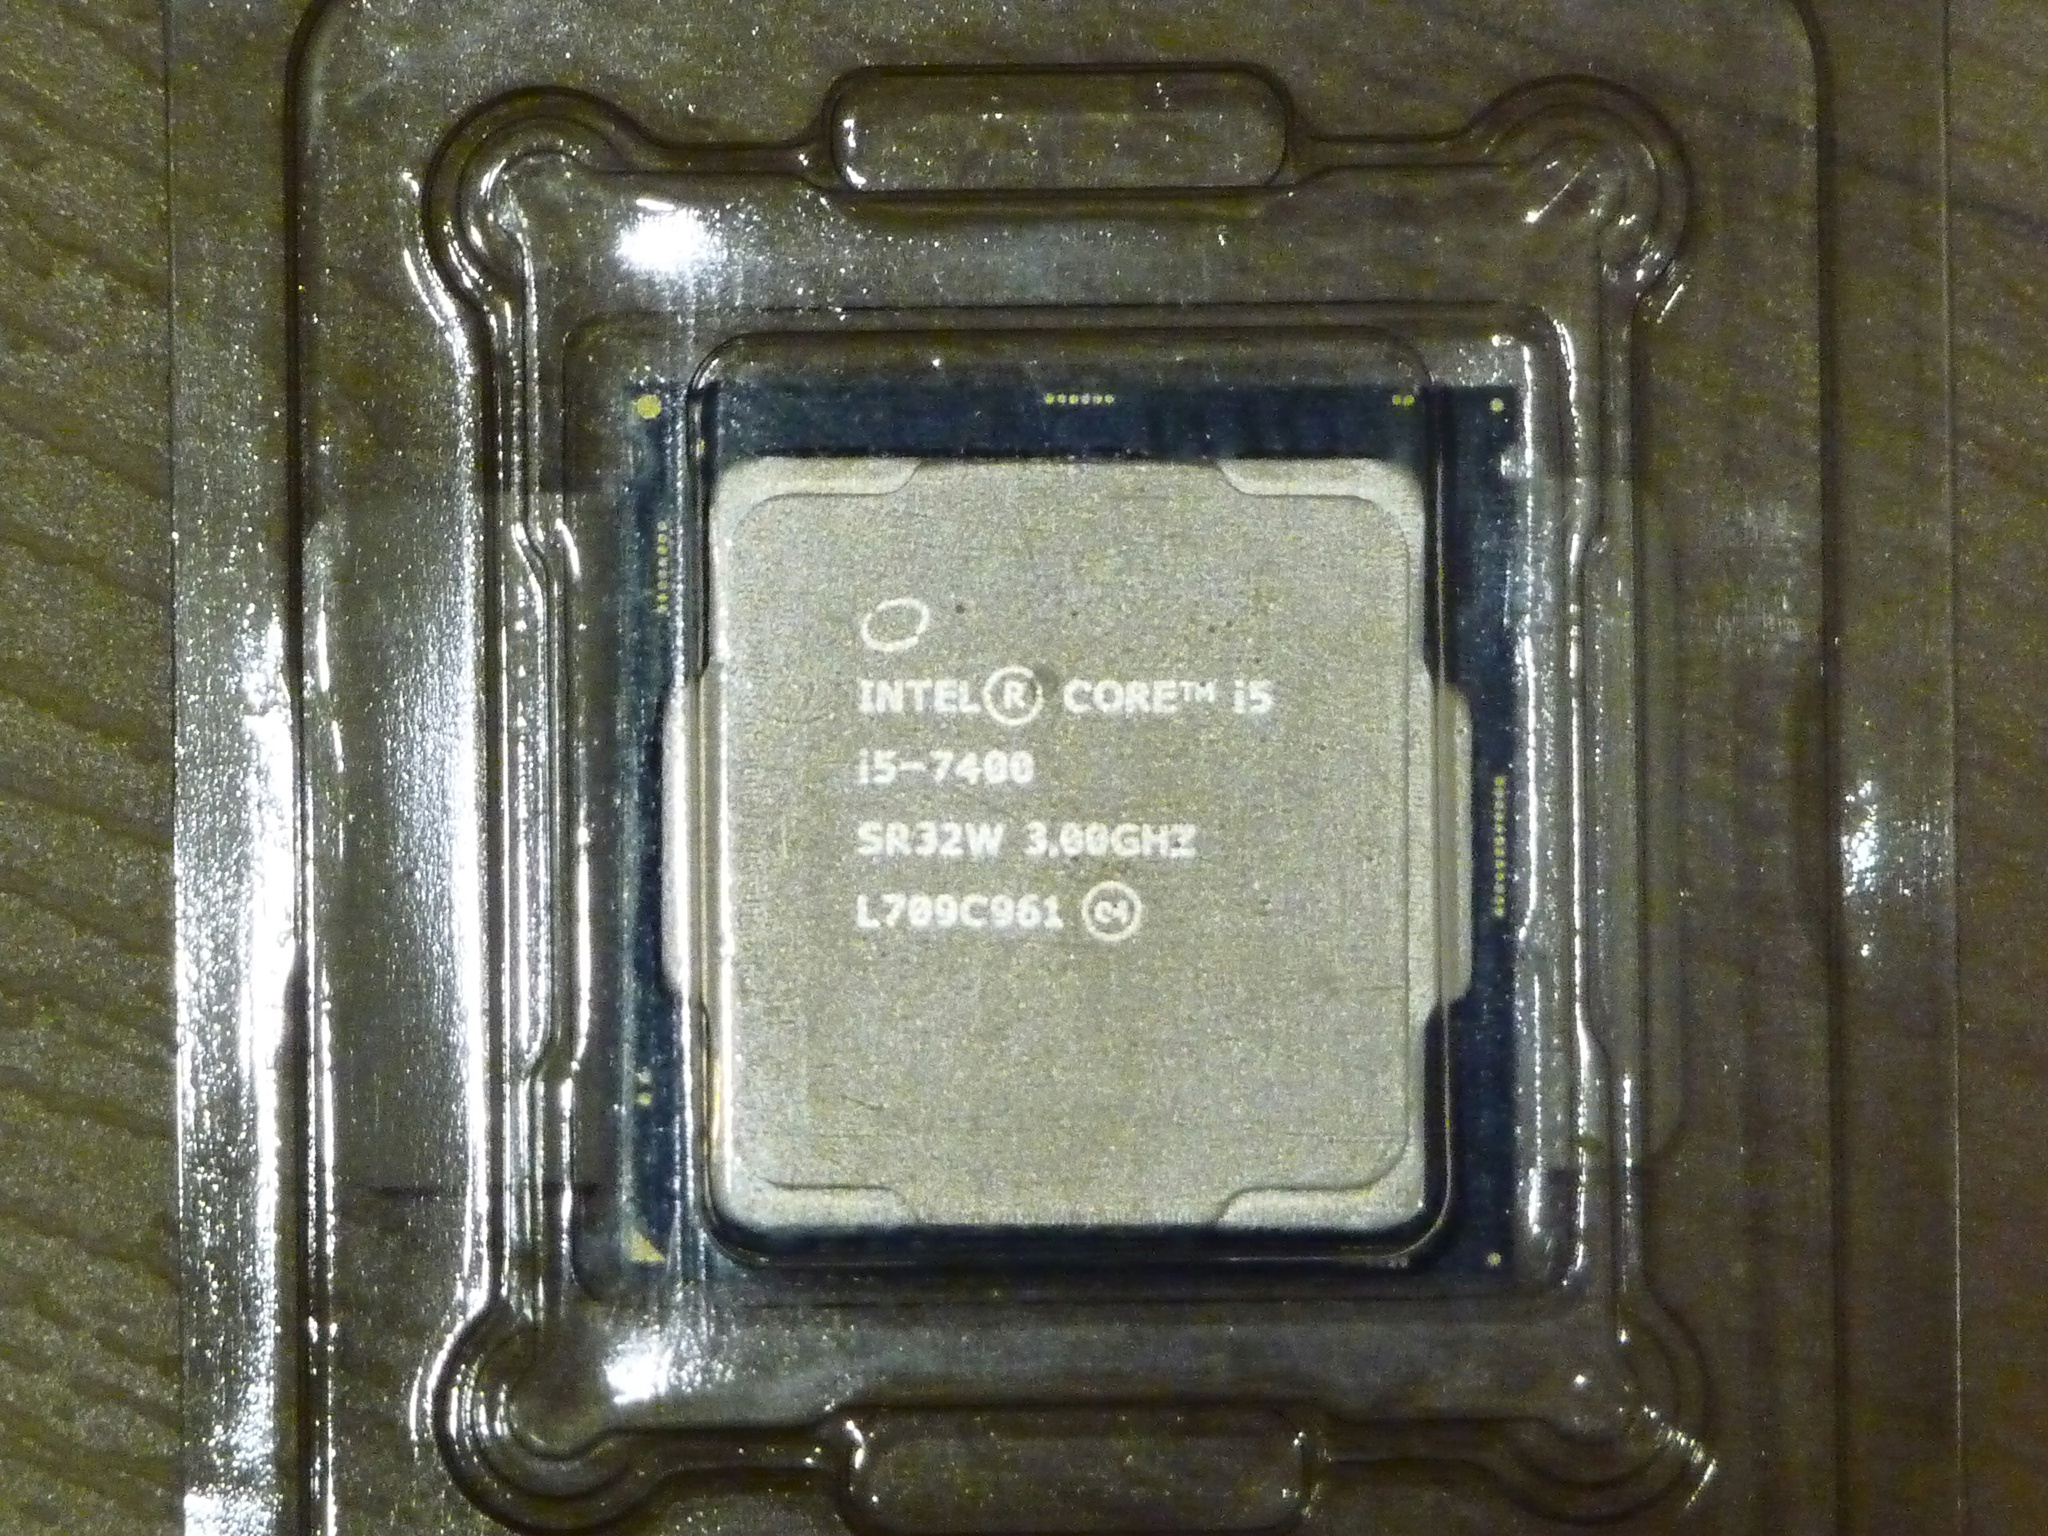 Интел коре 7400. Intel Core i5-7400. I5 7400. Intel Core i5 7400 CPU. Intel Core i5 7400 сокет.